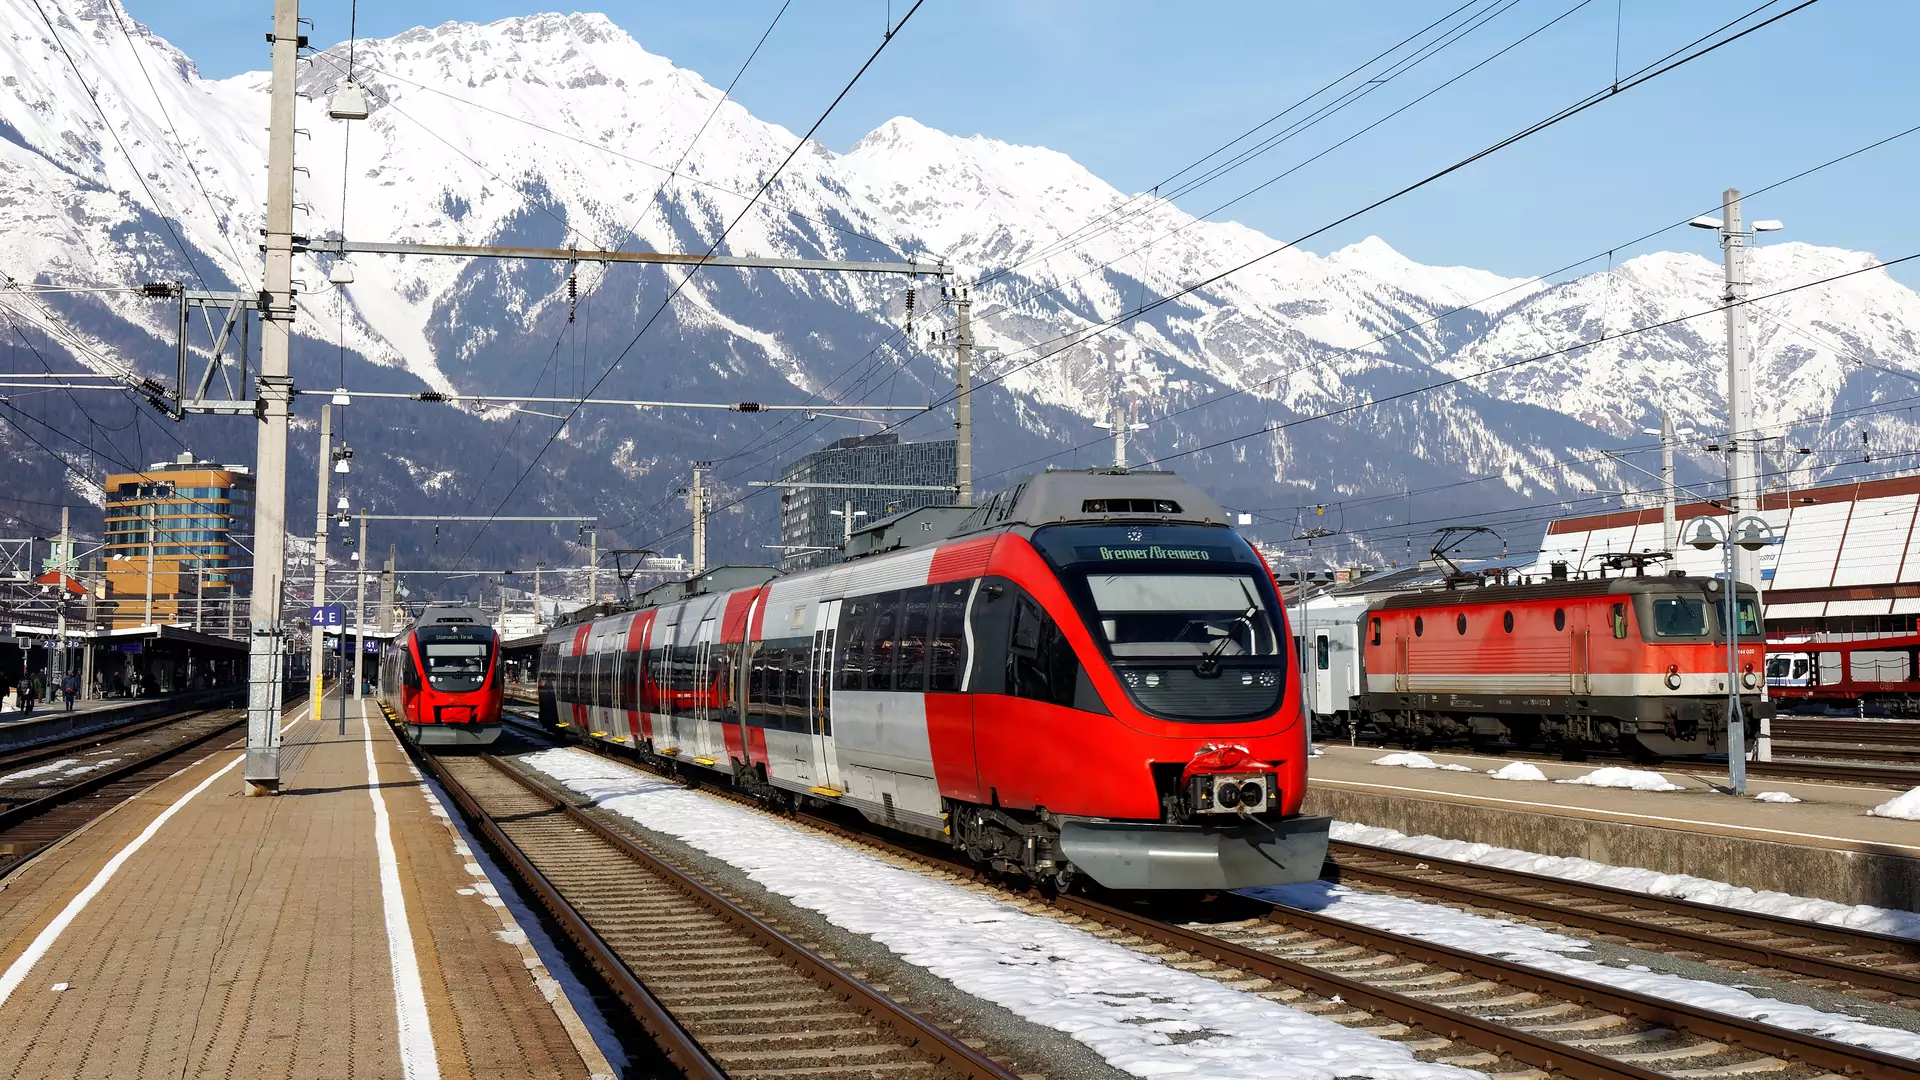 Z Warszawy prosto w Alpy. Bezpośredni pociąg będzie hitem wśród narciarzy?